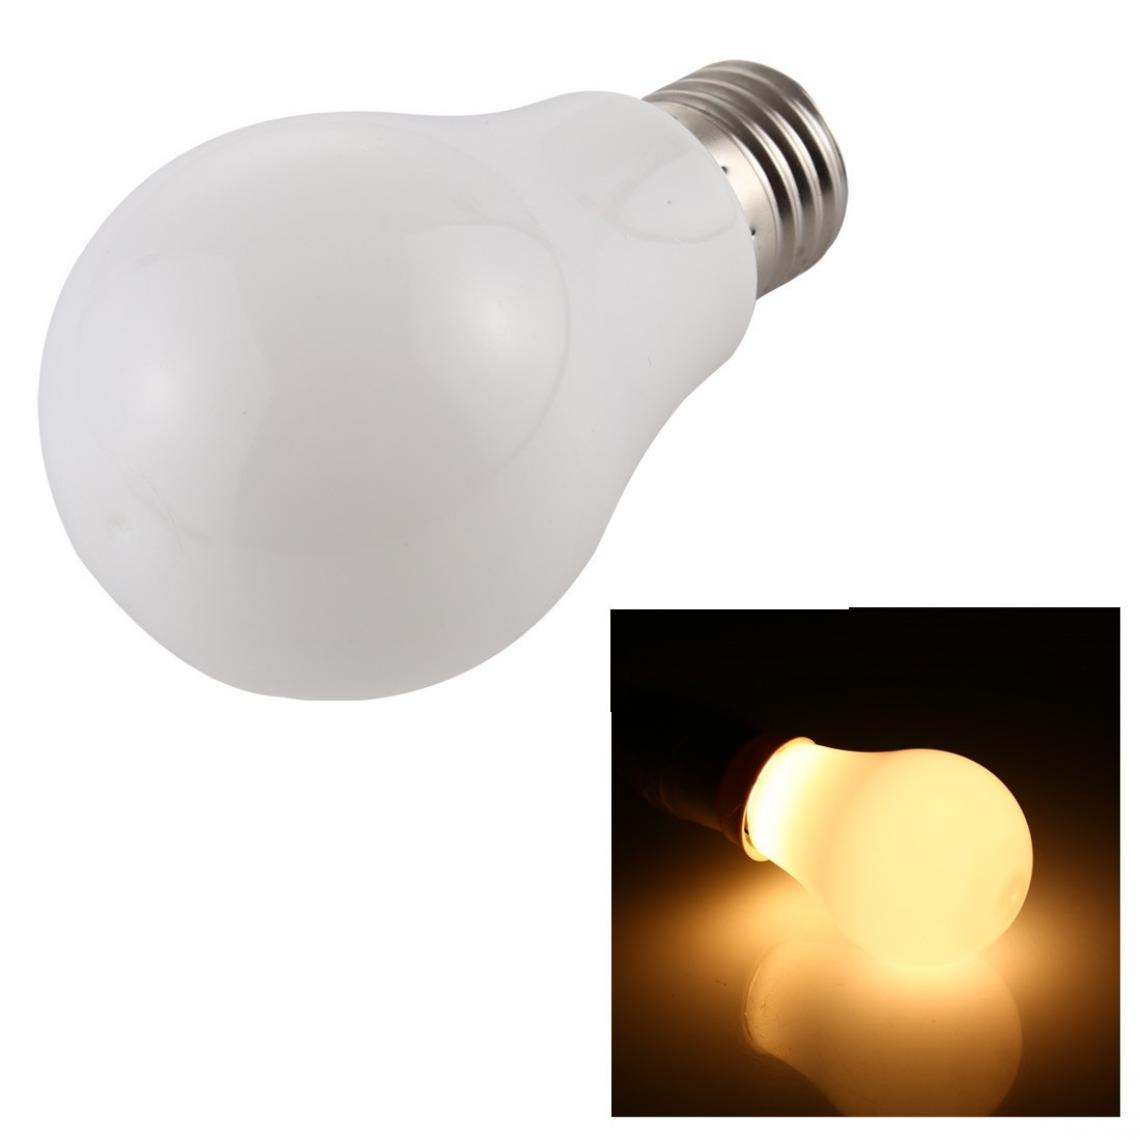 Wewoo - 4W 300LM E27 2835 8LEDs Ampoule à économie d'énergie LEDcouleur de la lumière blanc chaudAC 220V - Ampoules LED